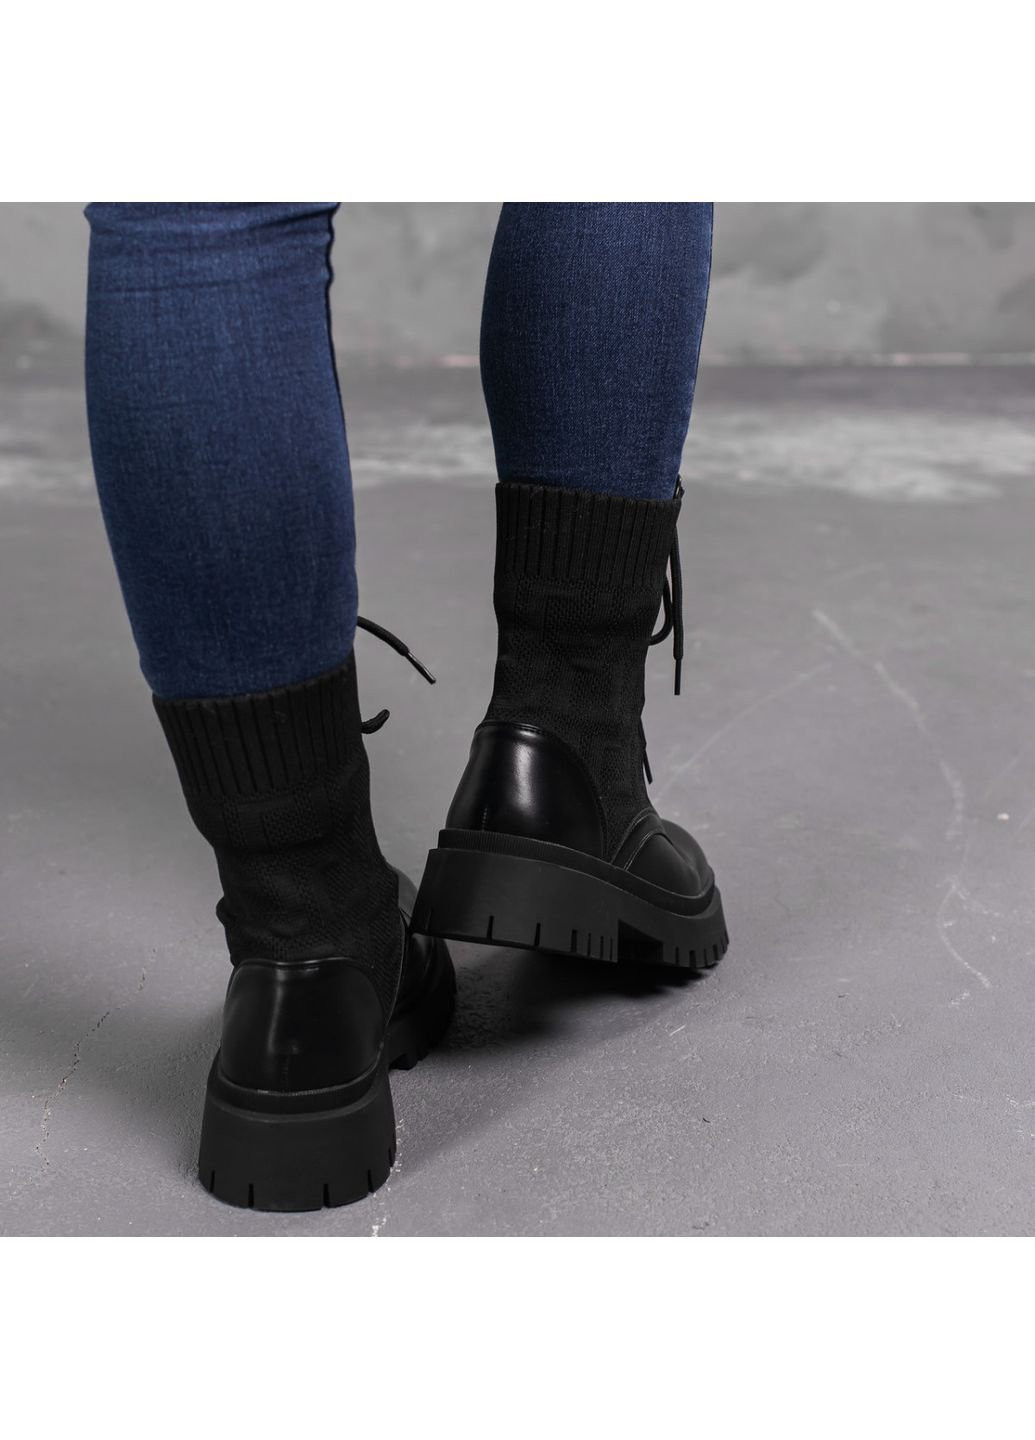 Осенние ботинки женские horseshoe 3368 39 25 см черный Fashion из искусственной кожи